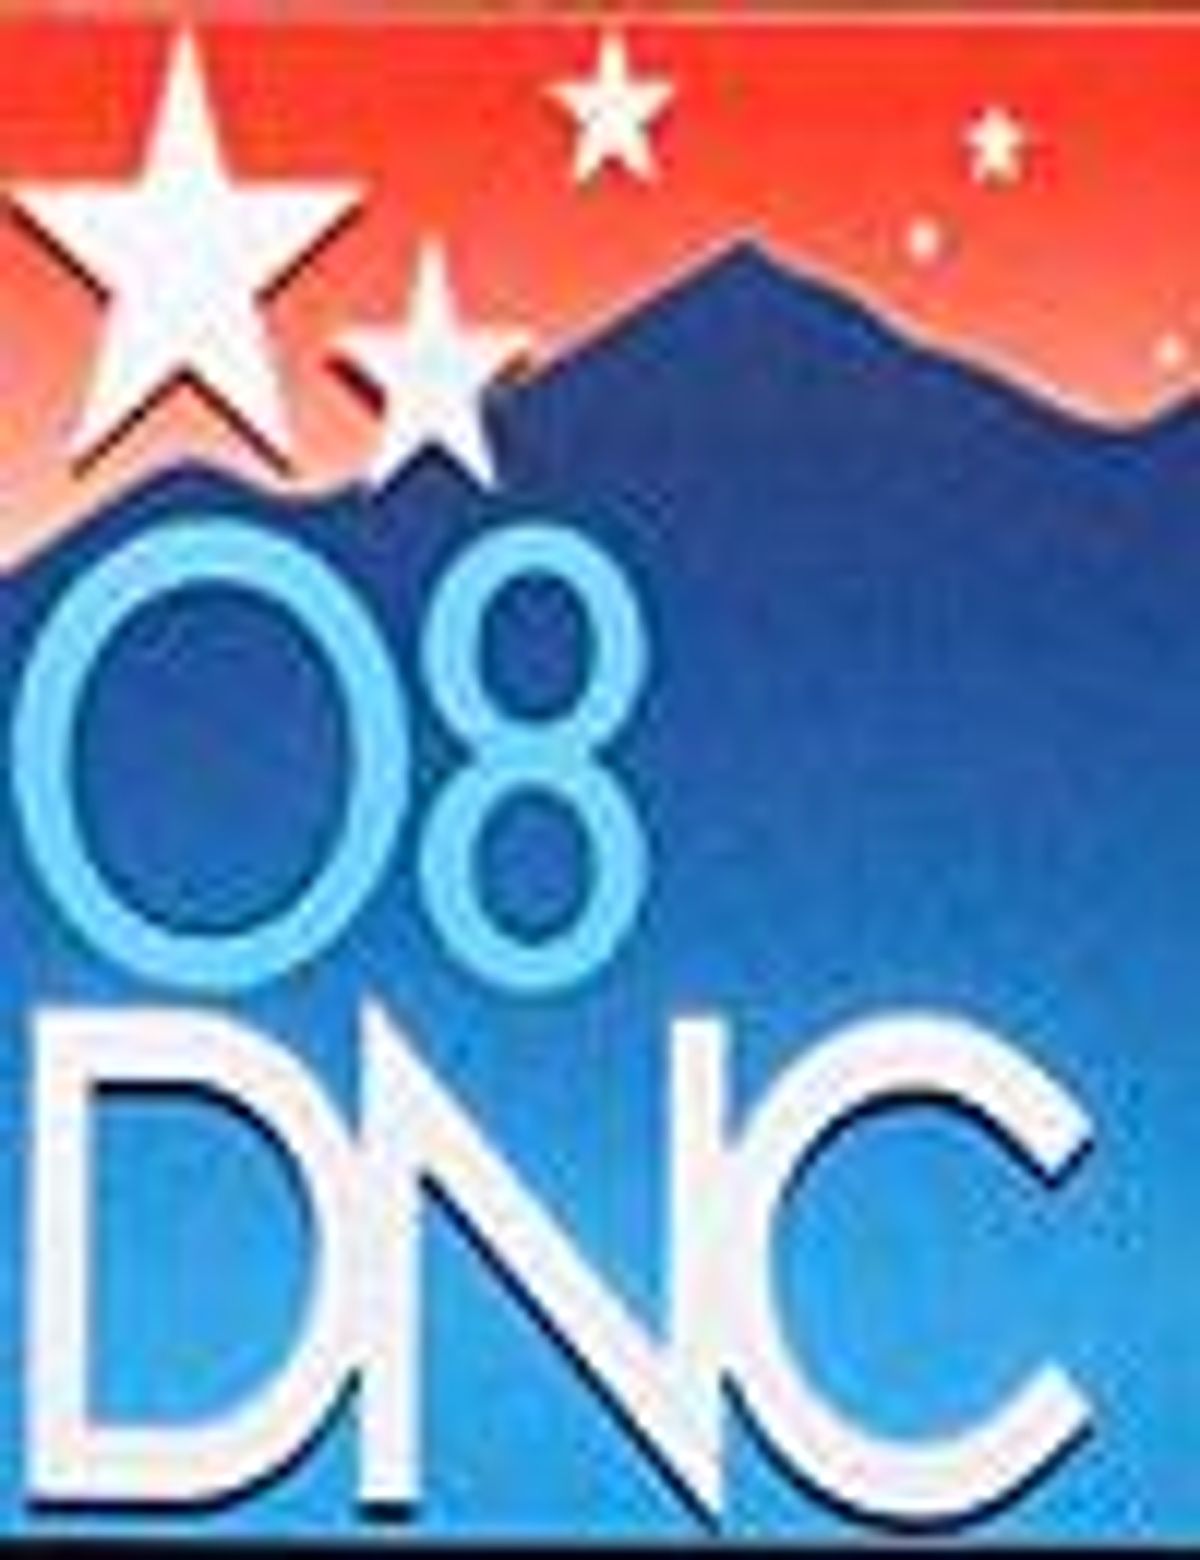 Dnc_logo